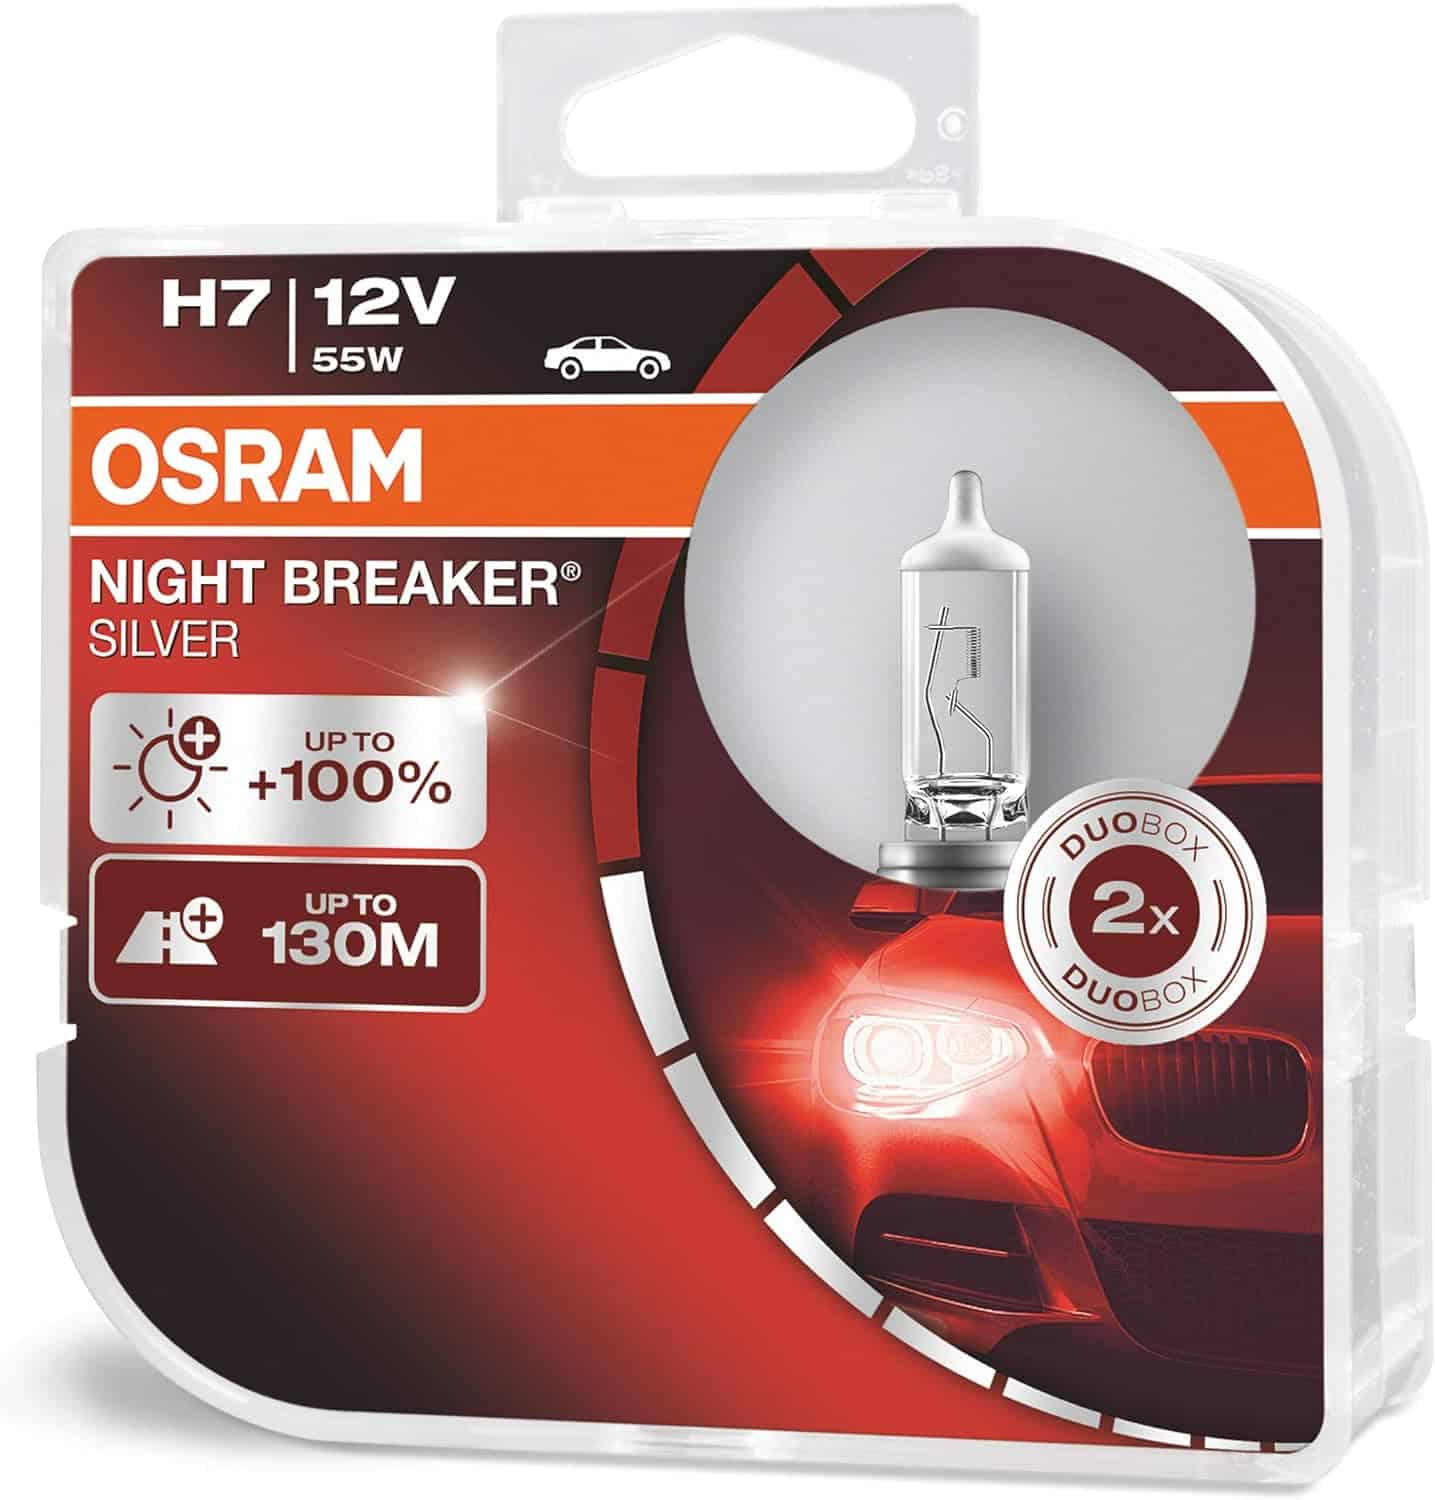 OSRAM NIGHT BREAKER SILVER H7, +100% more brightness, halogen headlamp-2719